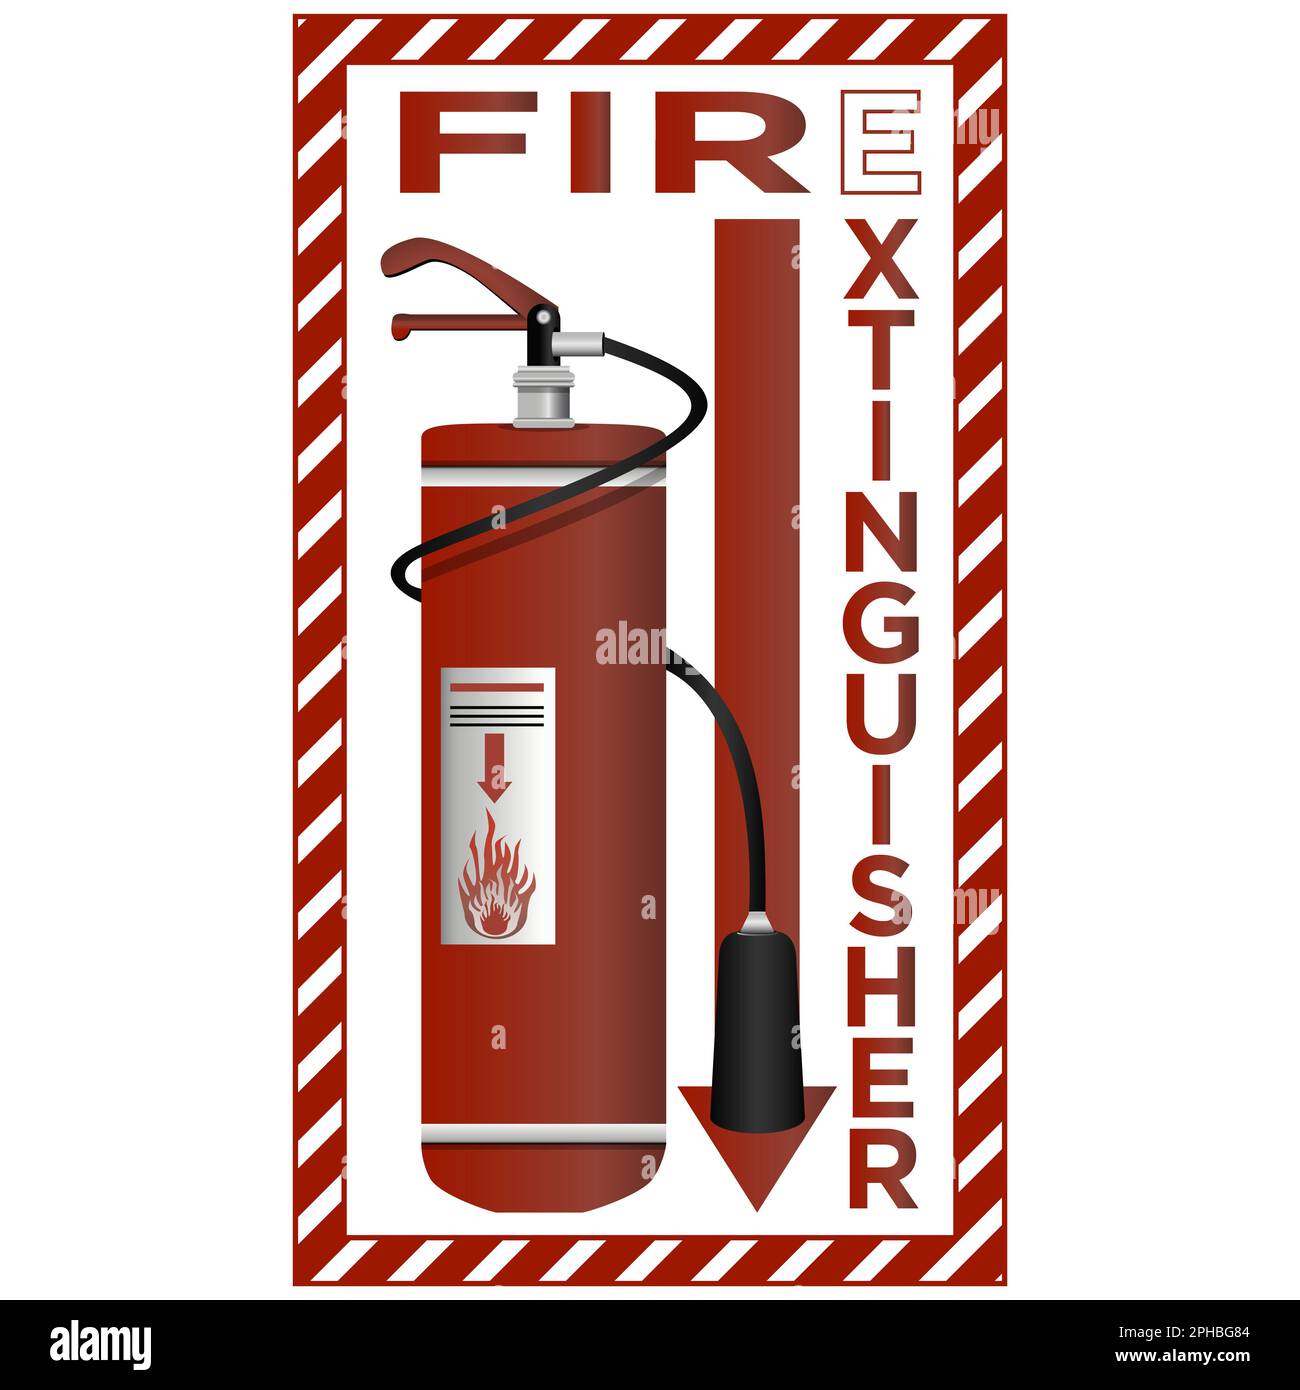 Fire extinguisher in -Fotos und -Bildmaterial in hoher Auflösung